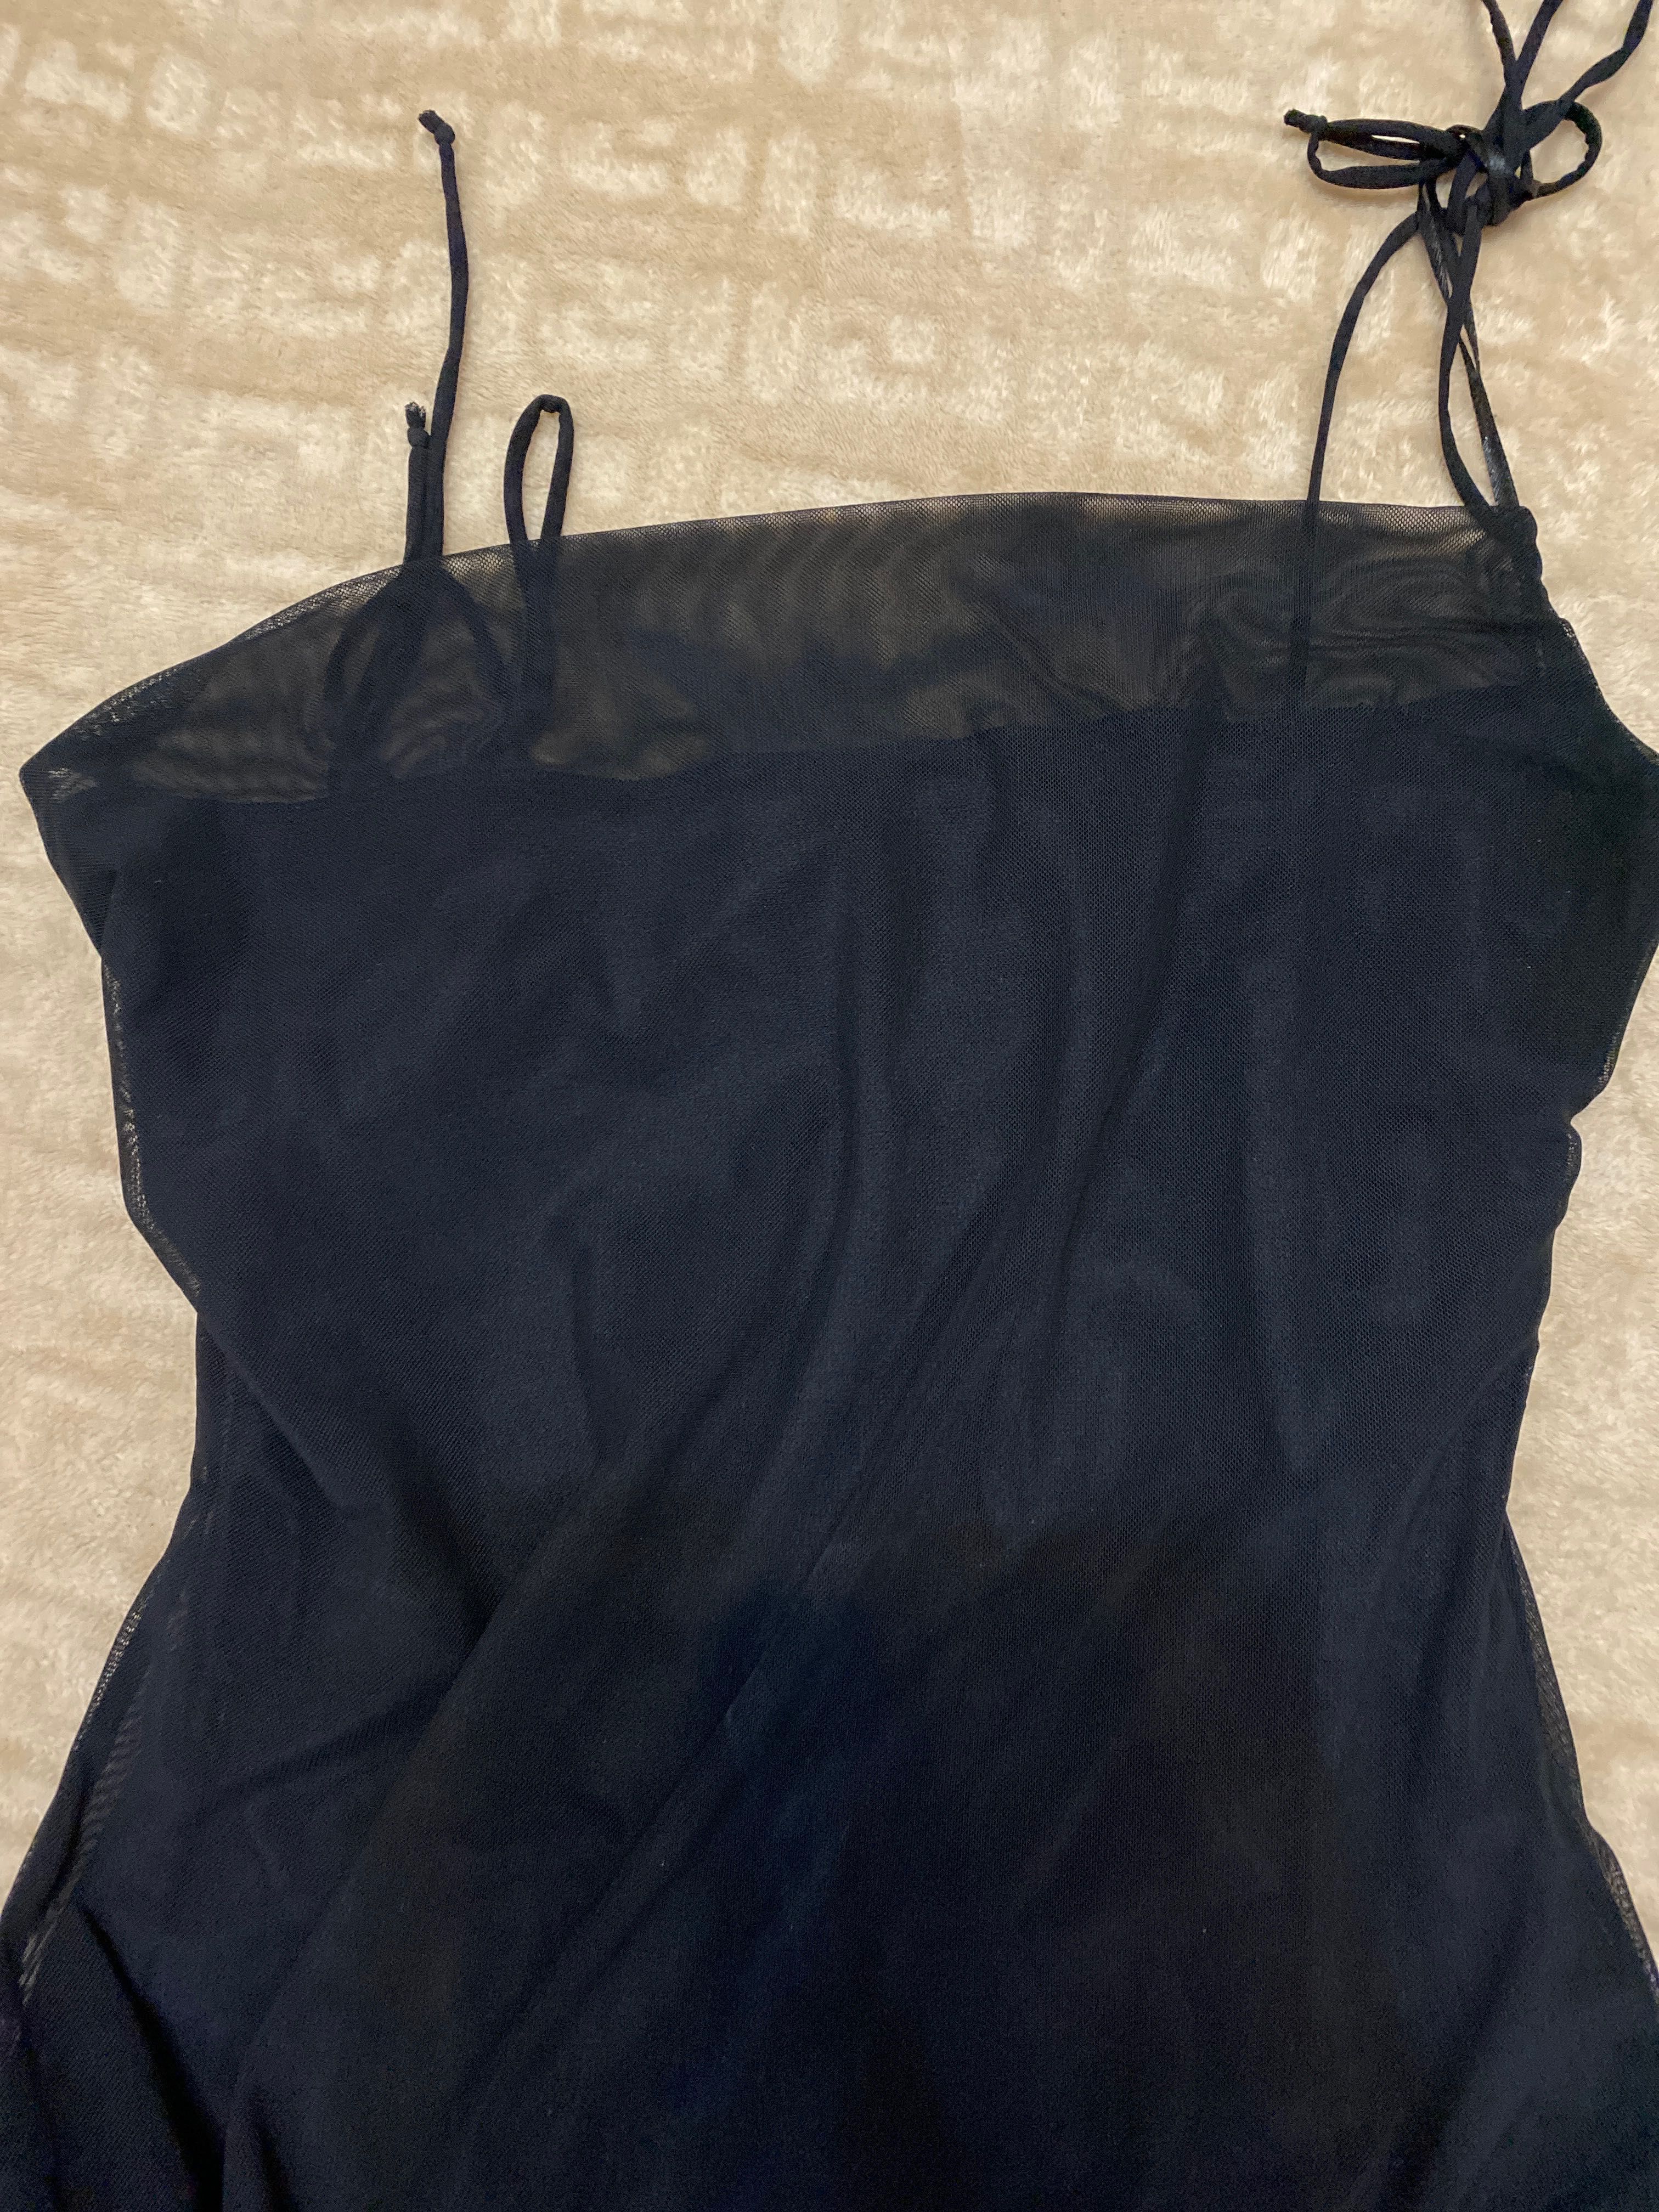 Платье черный размер М